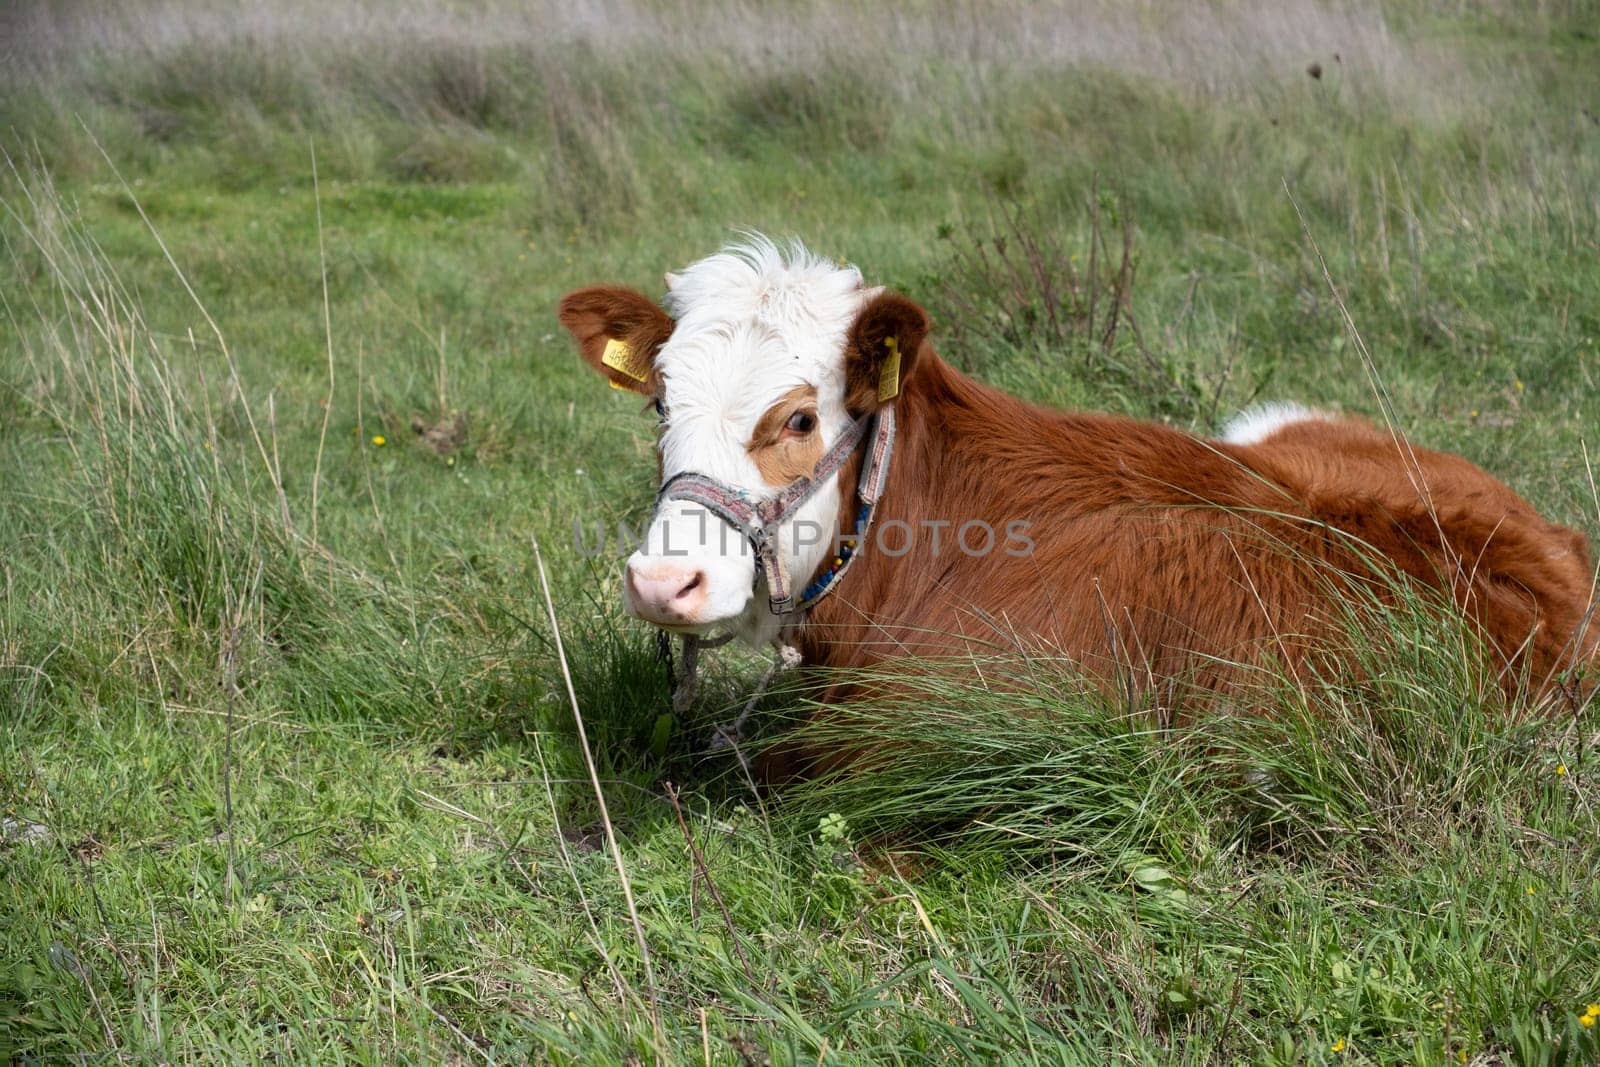 cows graze on a green field in sunny weather by senkaya